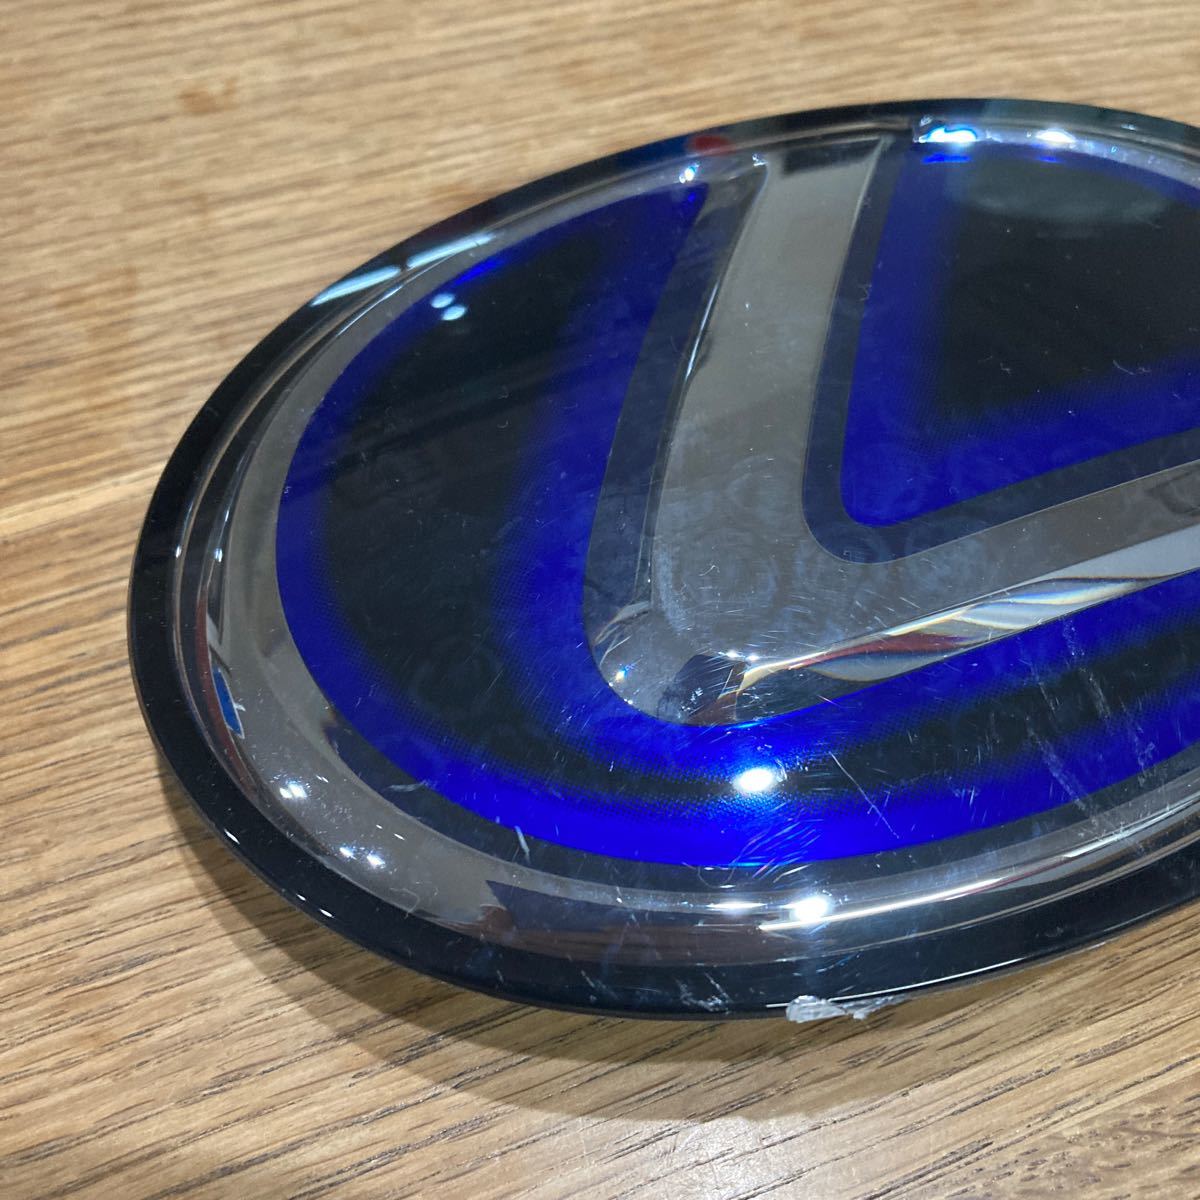  оригинальный товар LEXUS Lexus передний эмблема нагрев голубой 53141-48100 53141-48110 - 6